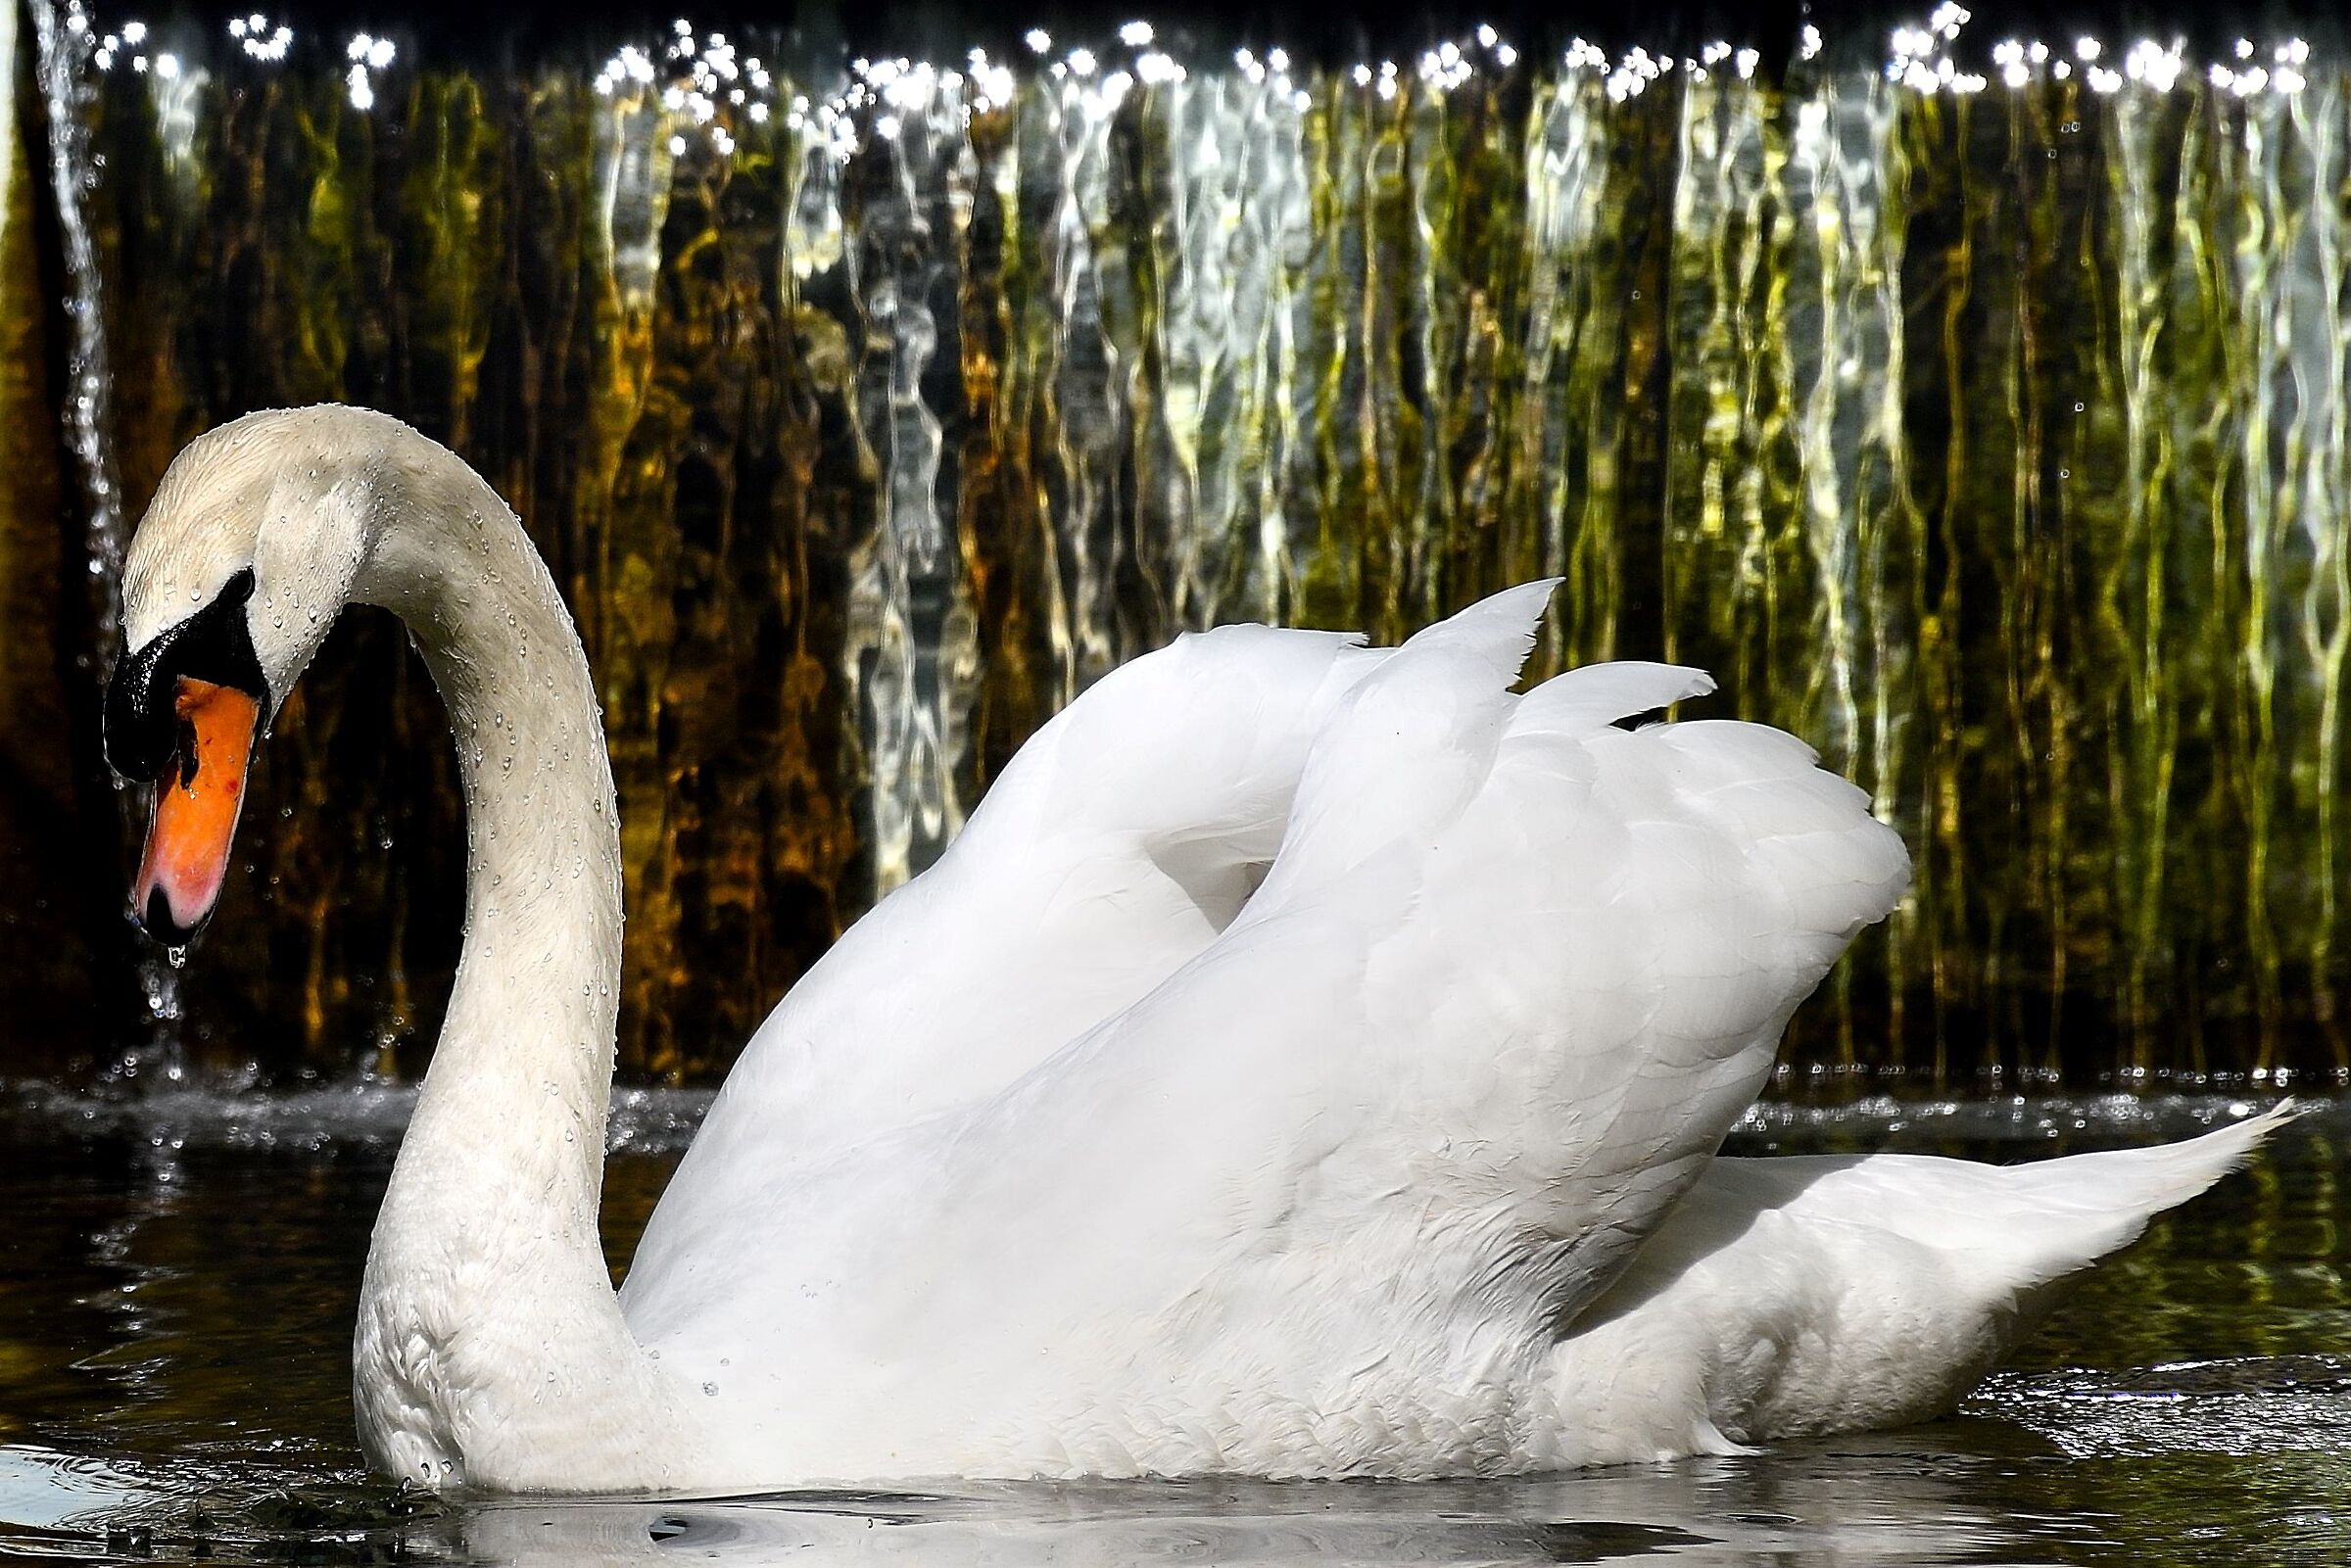 The Swan of Villa Ormond...